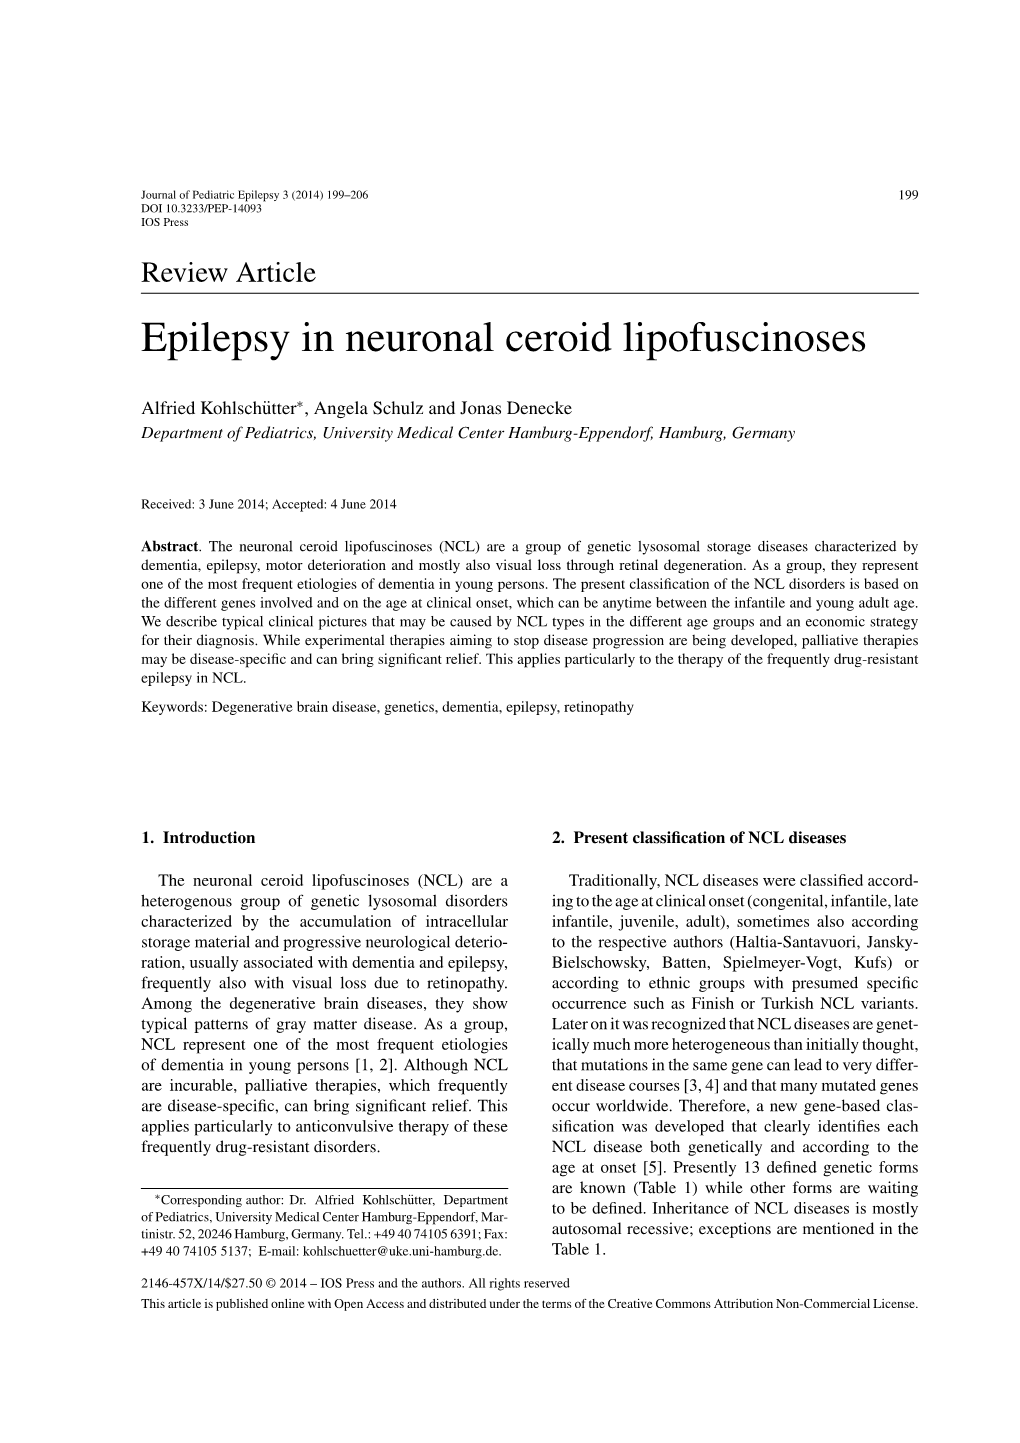 Epilepsy in Neuronal Ceroid Lipofuscinoses